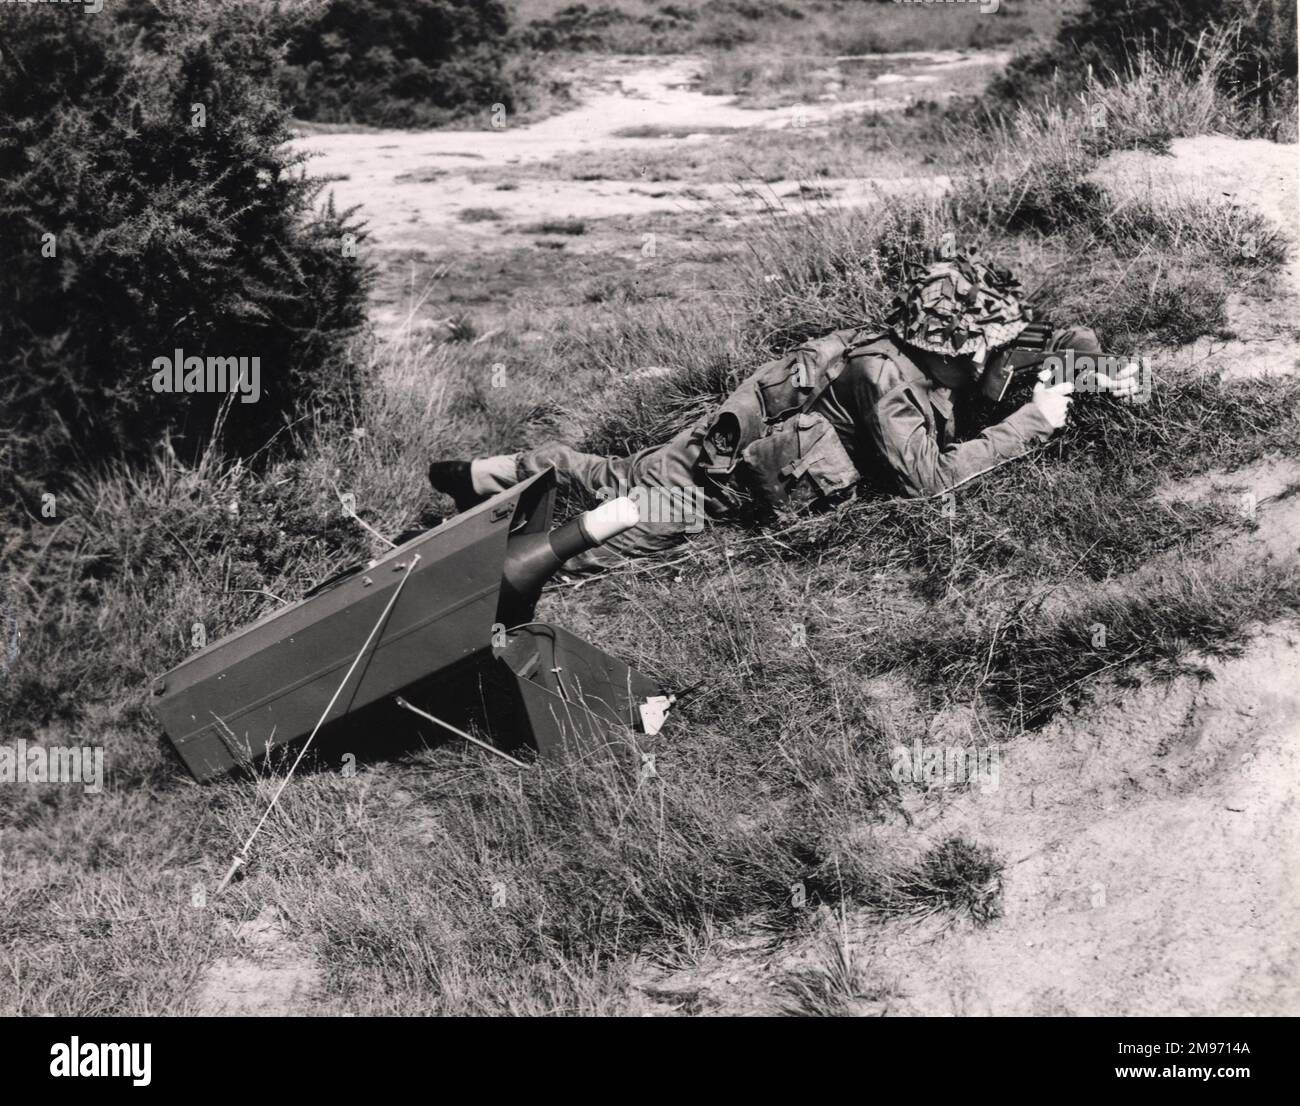 Ein Soldat, der eine Vickers 891-Panzerabwehrrakete abfeuern will. Ungefähr 1961. Stockfoto